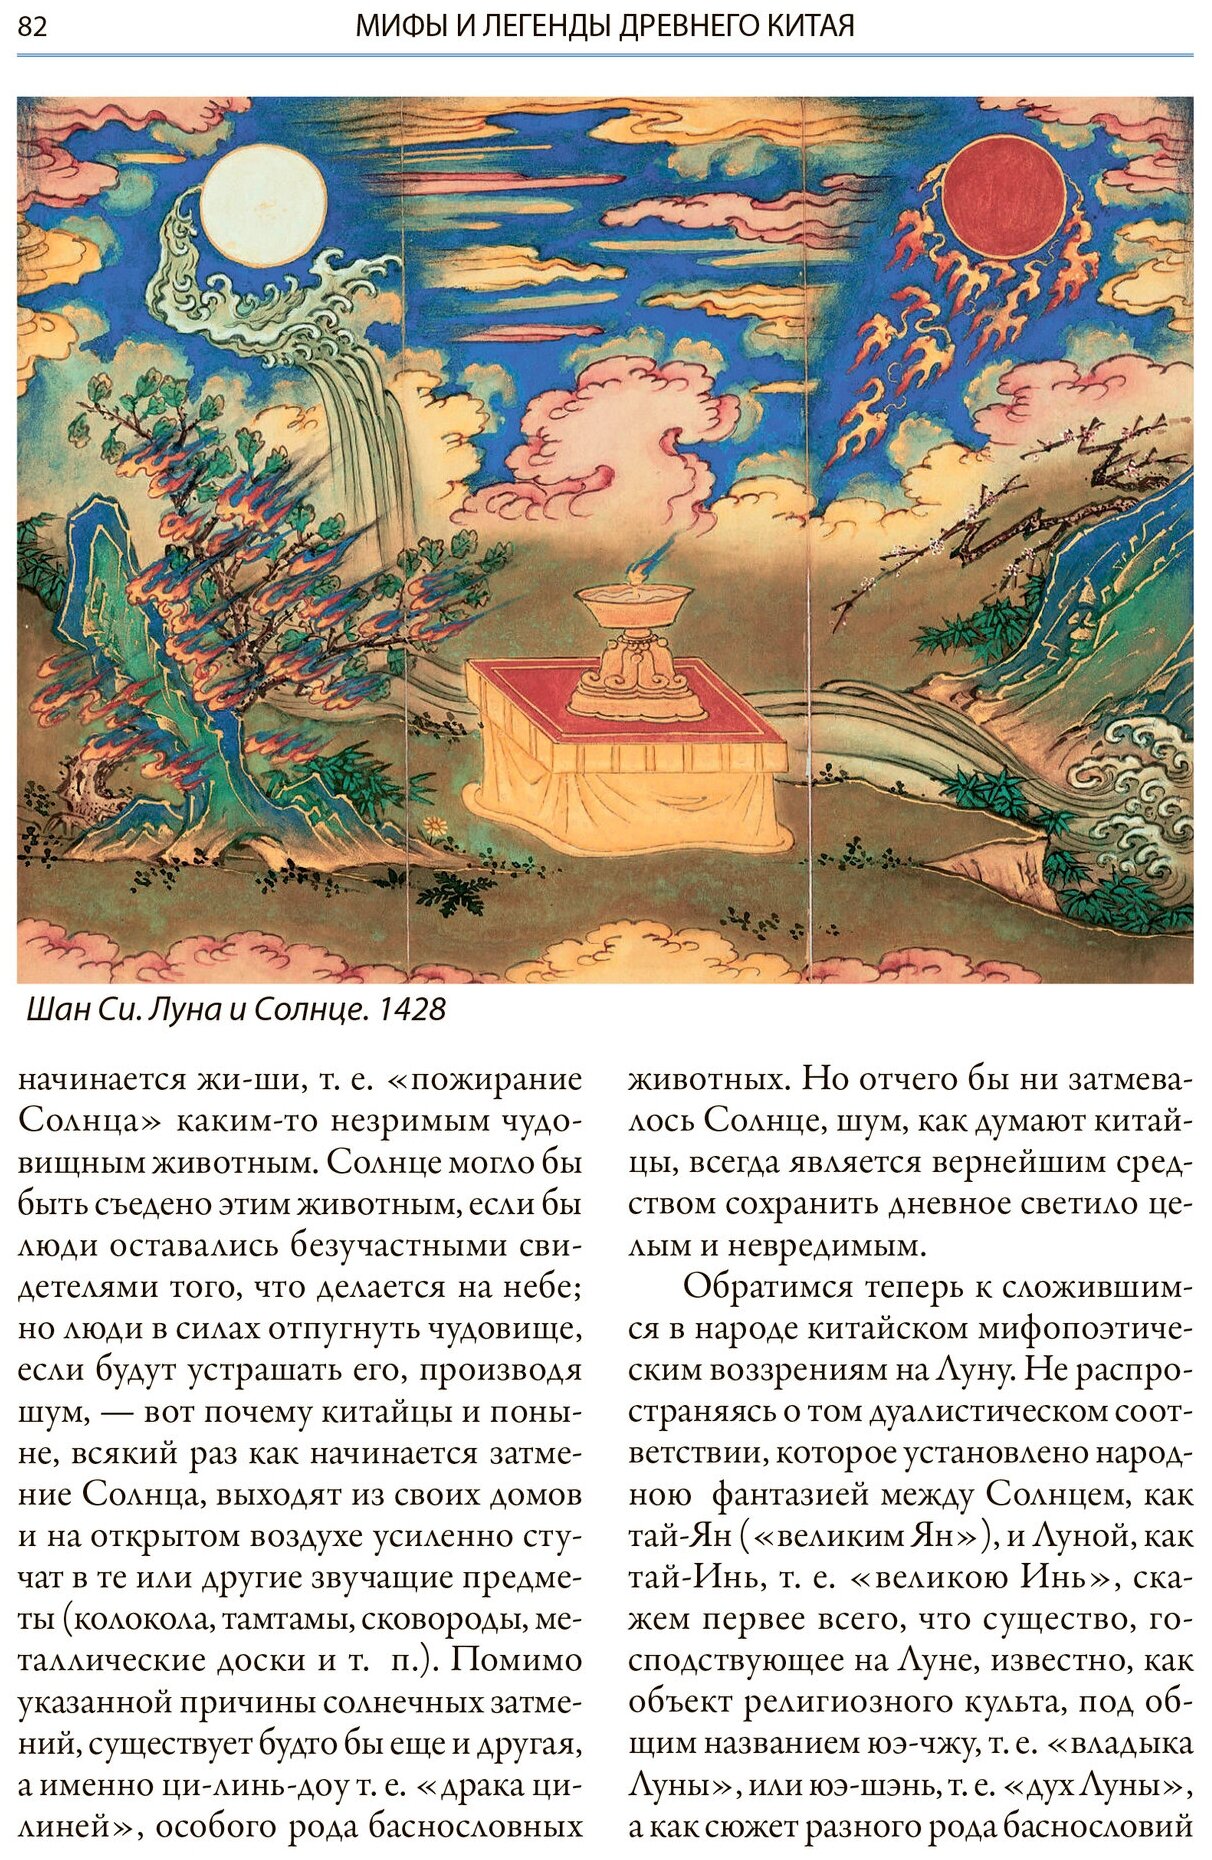 Мифы Древнего Китая Мифические воззрения и мифы китайцев - фото №10